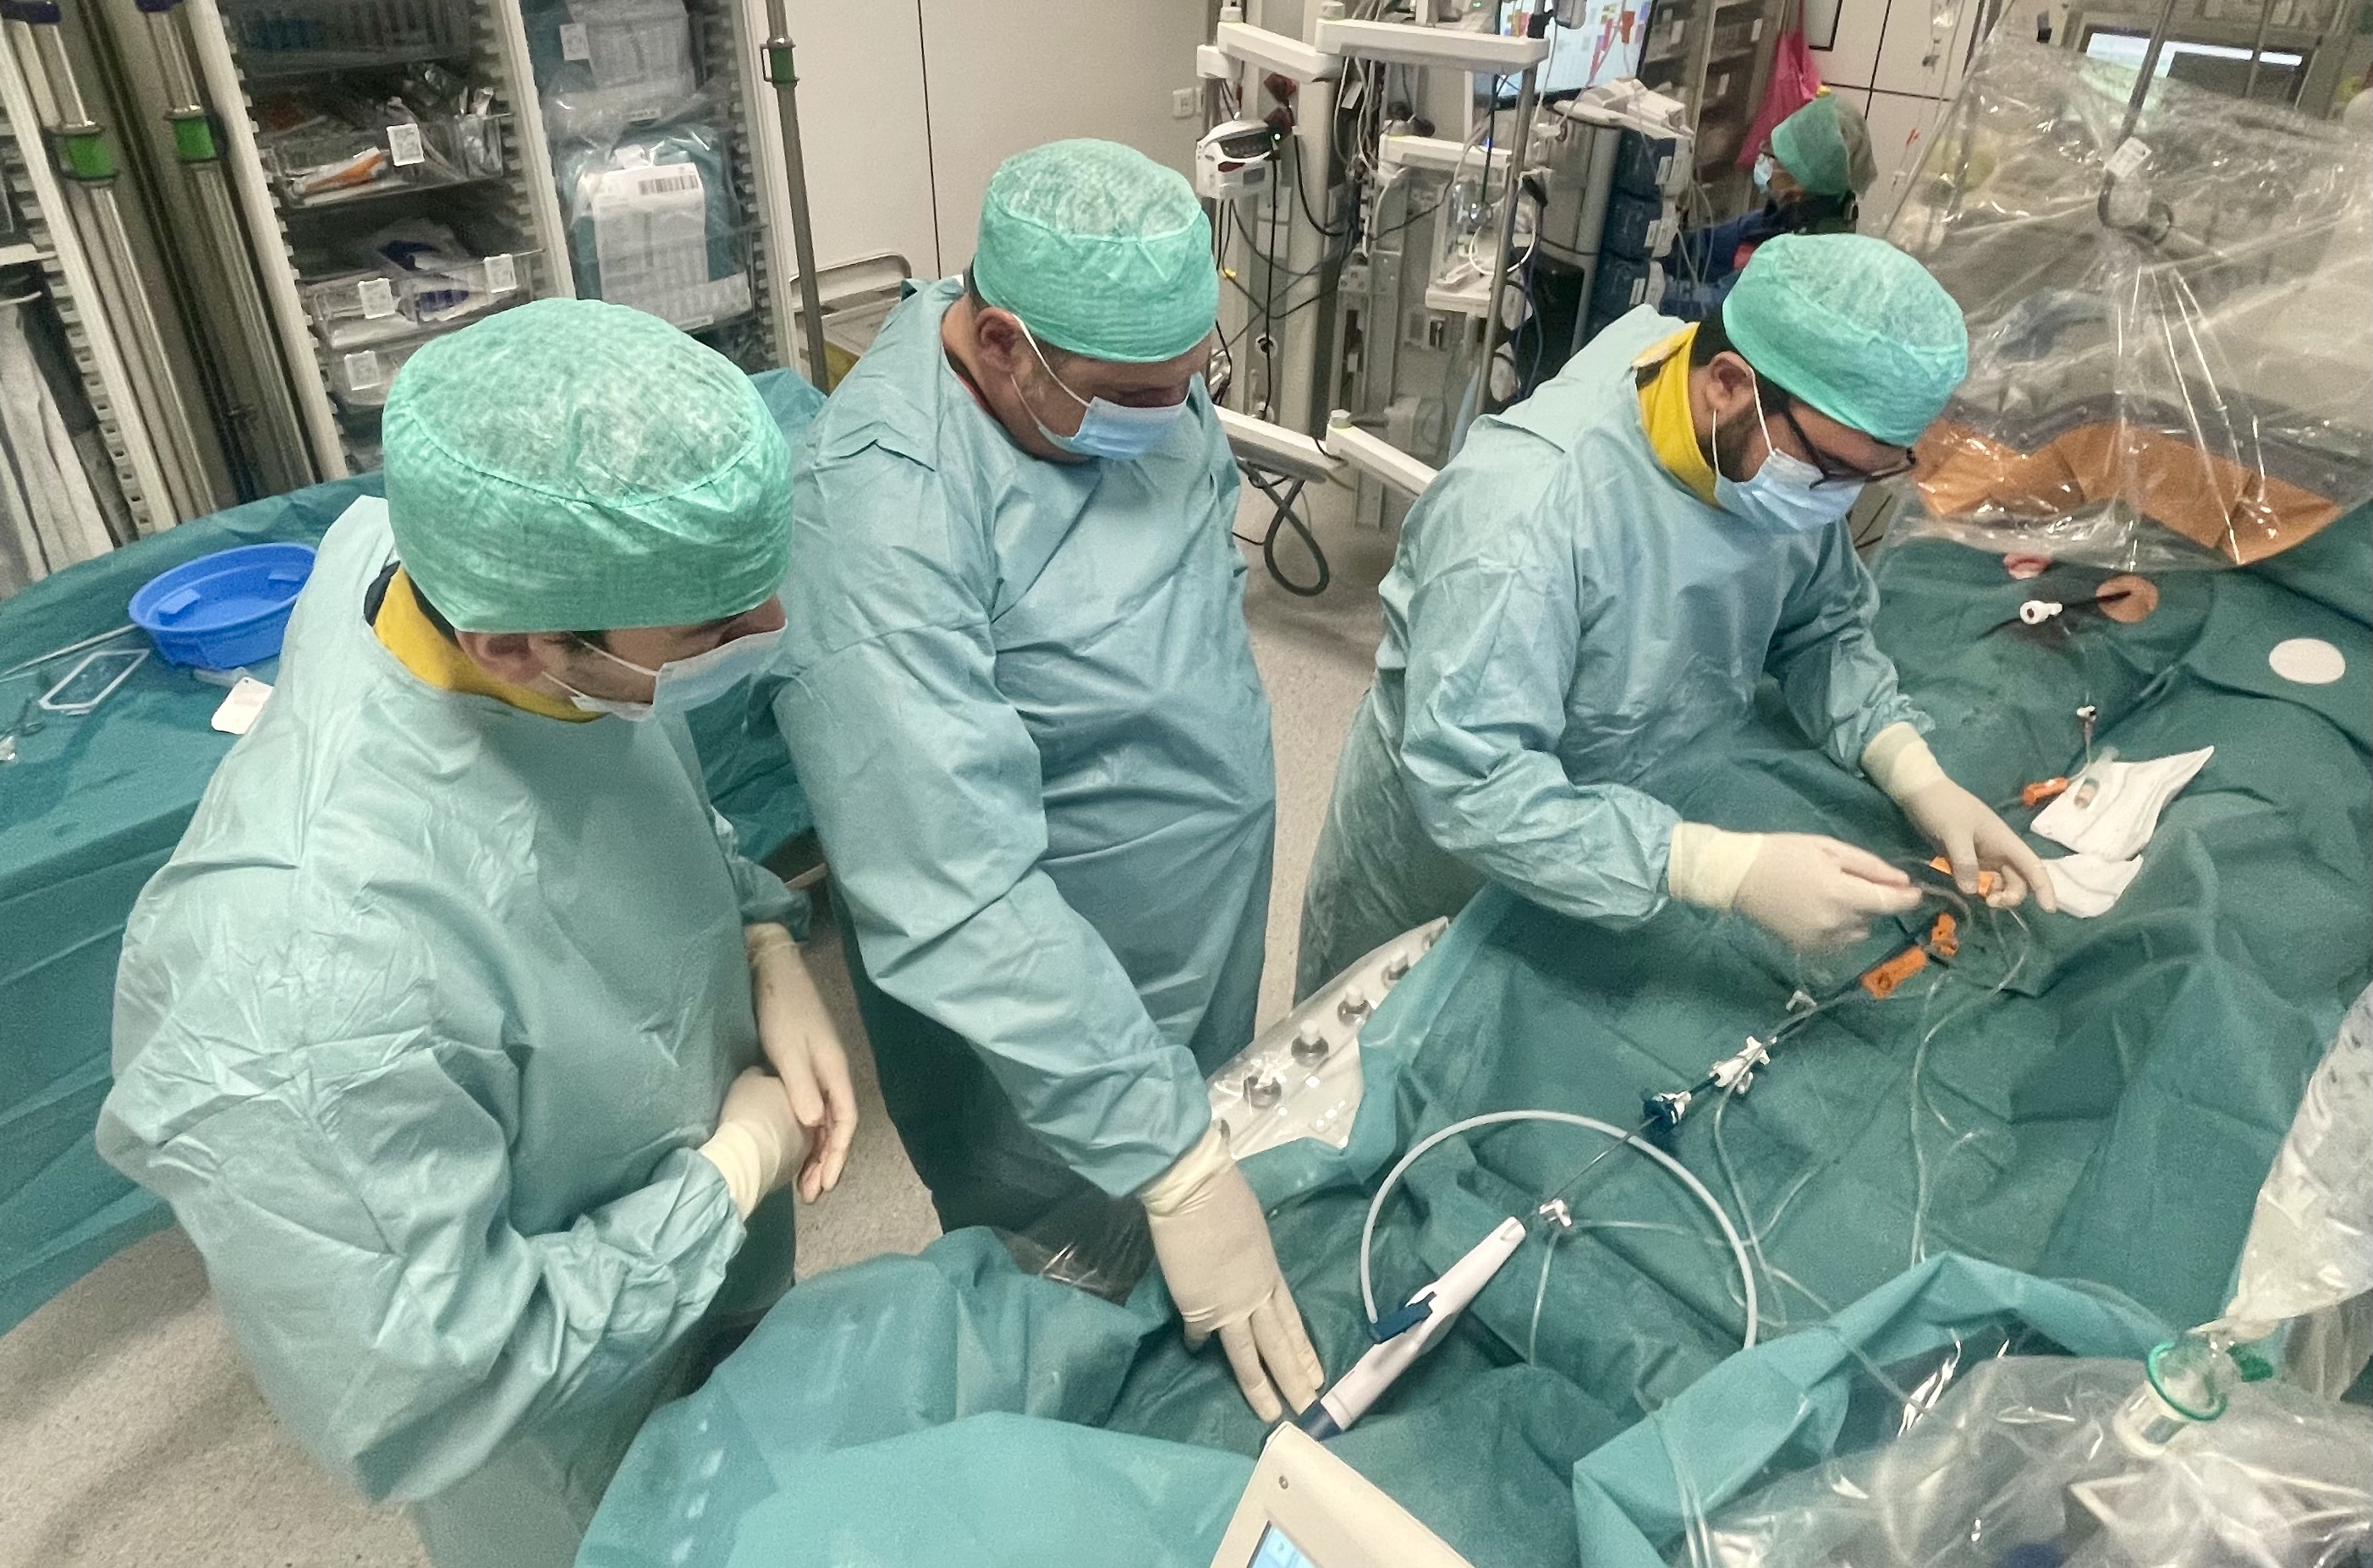 UZ Brussel implanteert nieuwste draadloze minipacemaker als eerste stap naar volledig draadloze tweekamer pacemaker